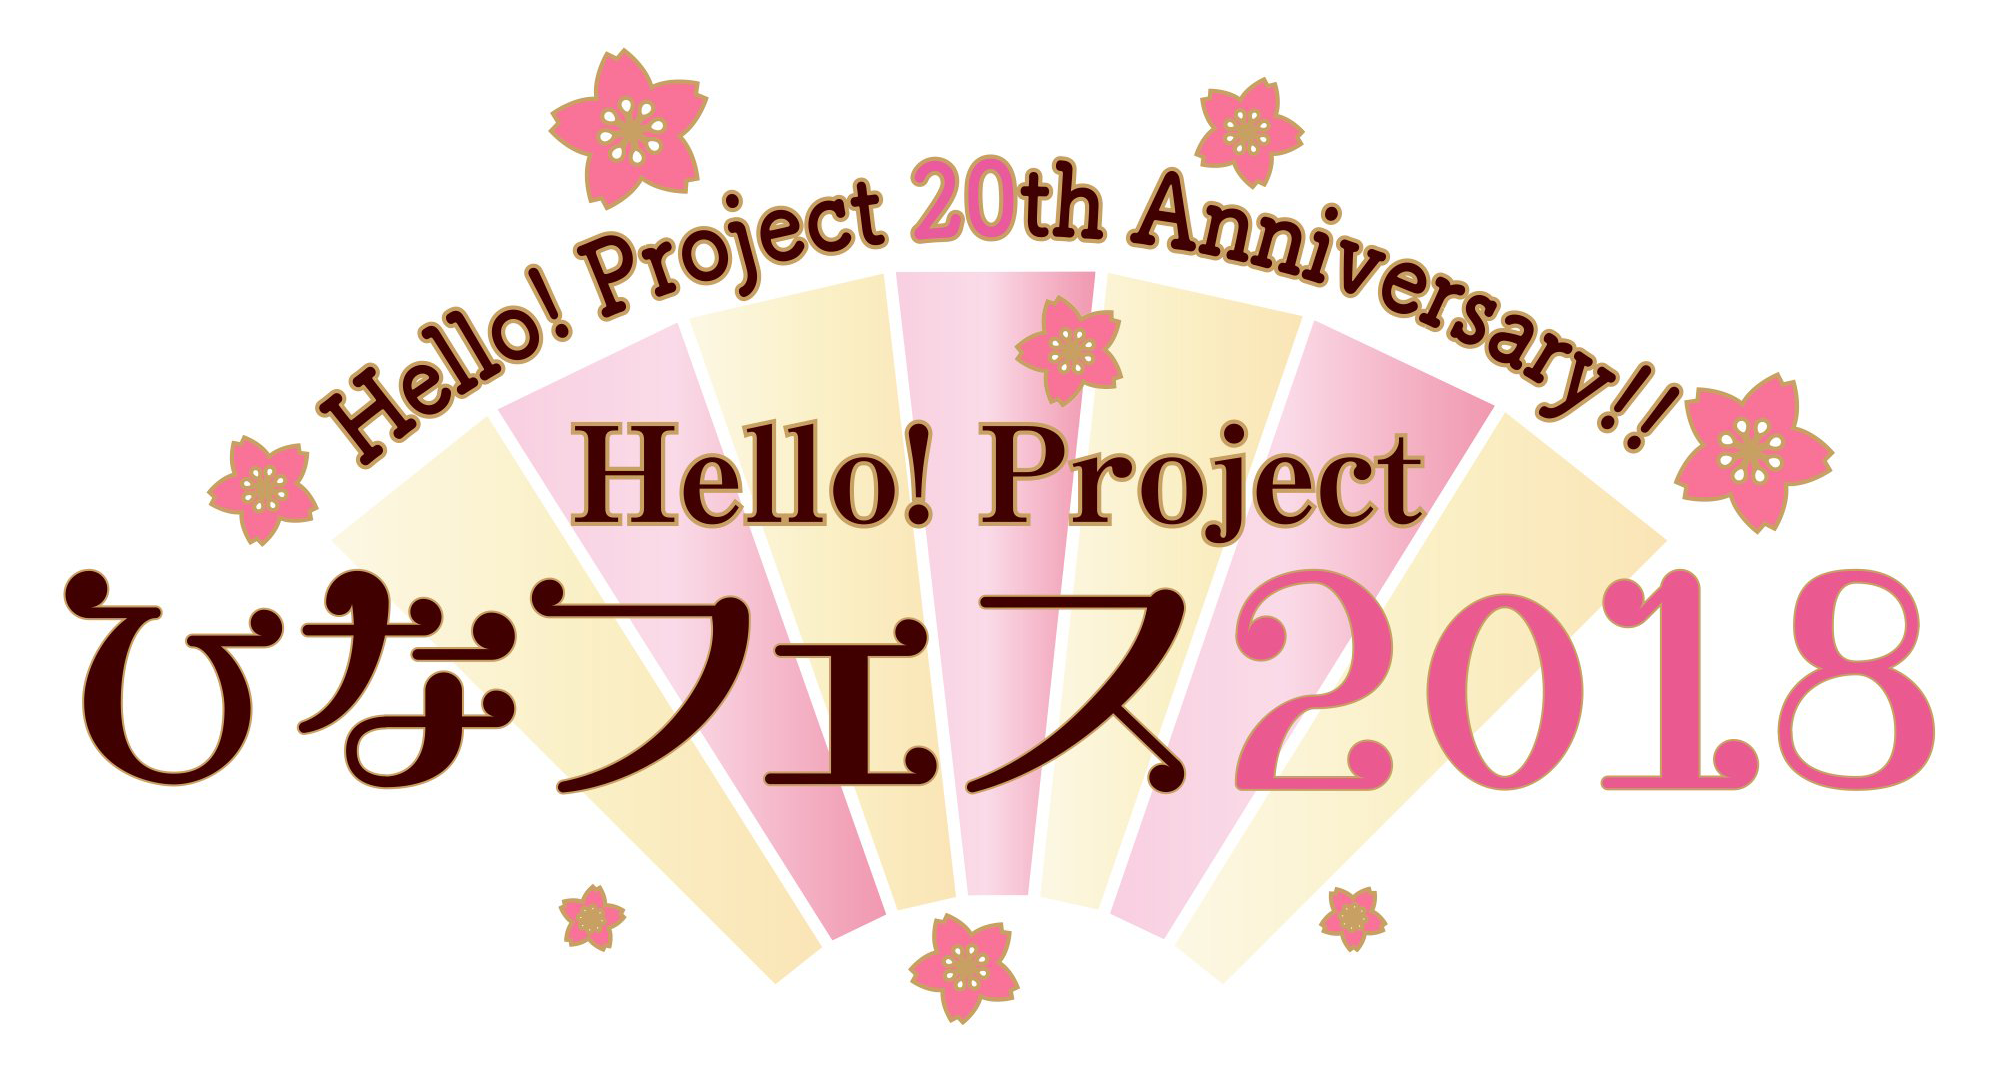 Hello! Project 20th Anniversary!! Hello! Project Hina Fes 2018 | Hello!  Project Wiki | Fandom